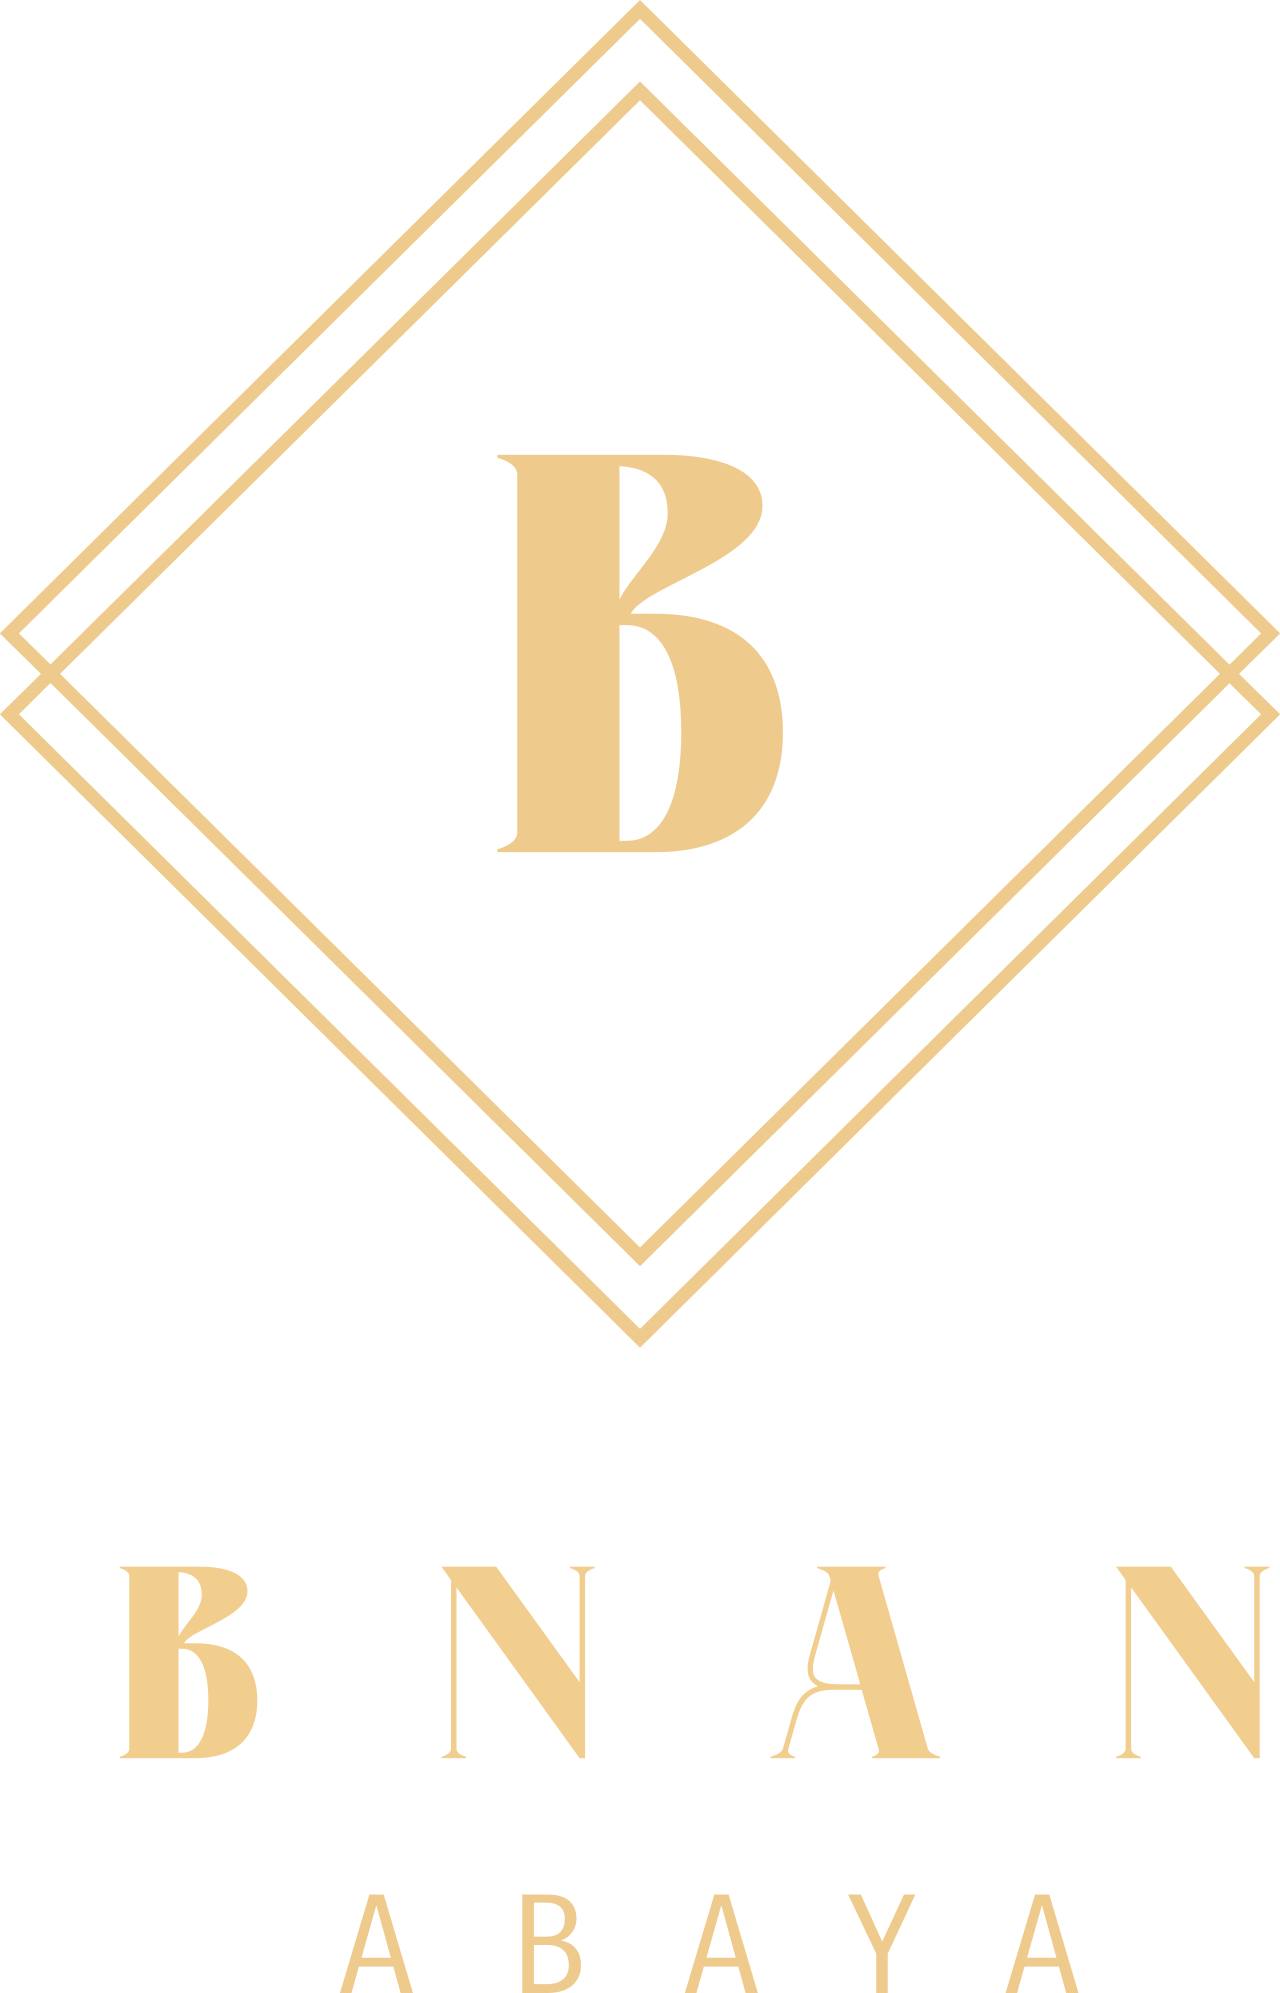 BNAN's web page